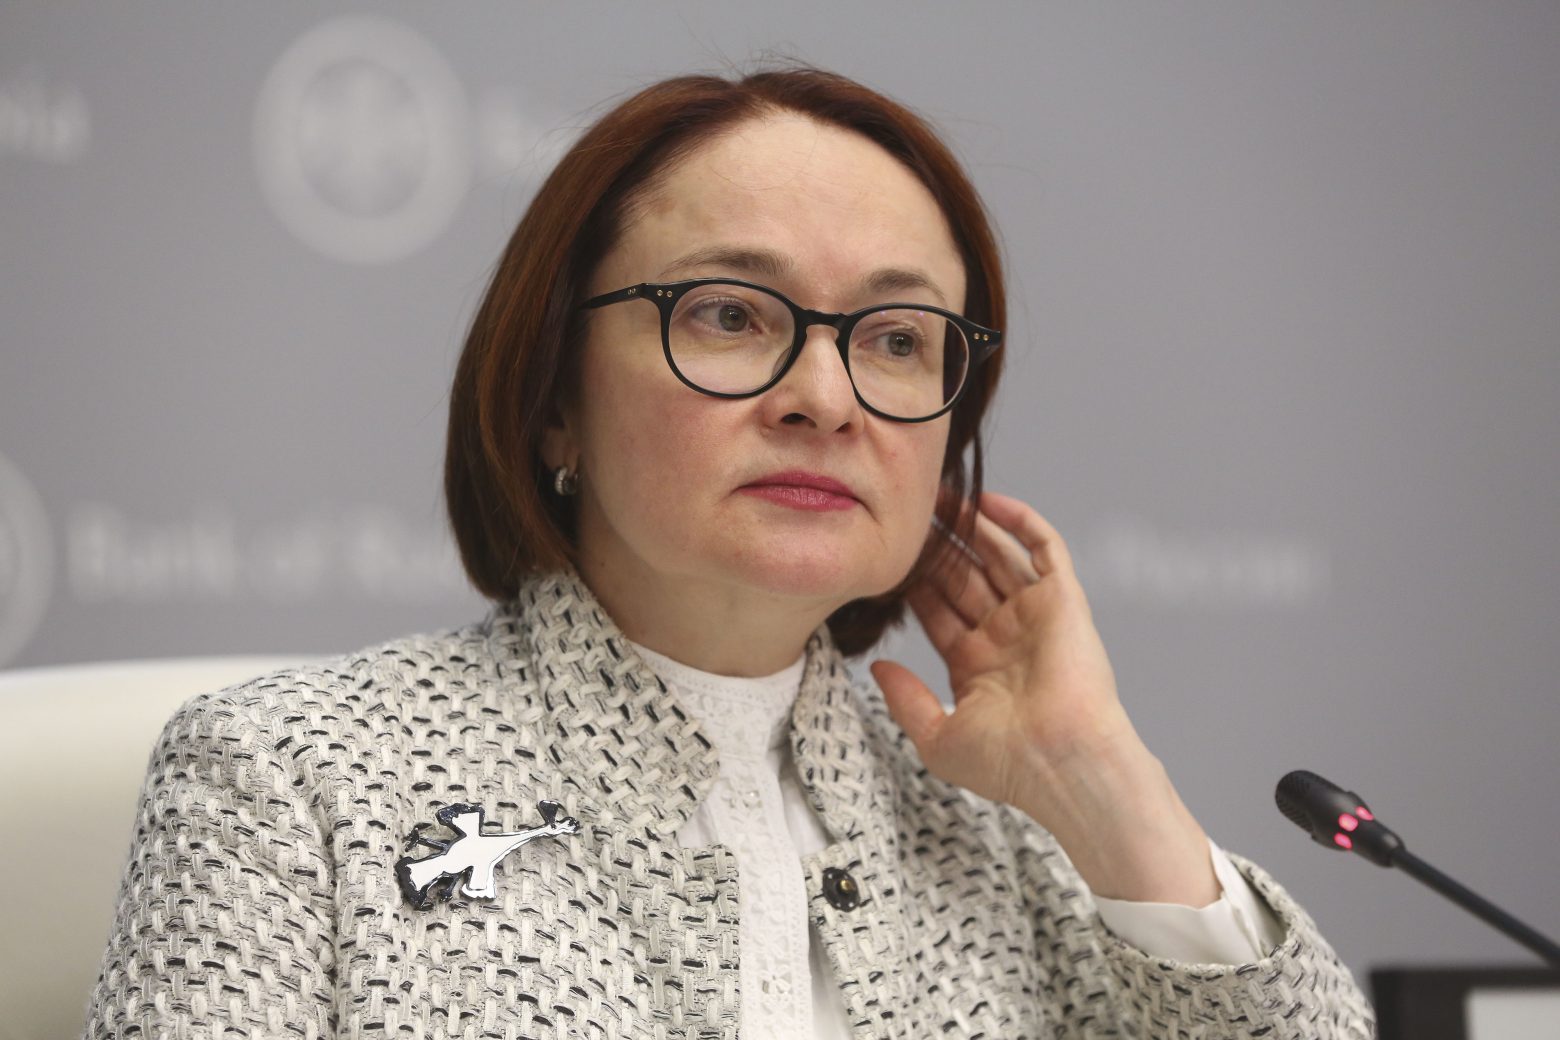 Ρωσία: Η επικεφαλής της Κεντρικής Τράπεζας θέλει να παραιτηθεί, αλλά ο Πούτιν λέει «όχι»